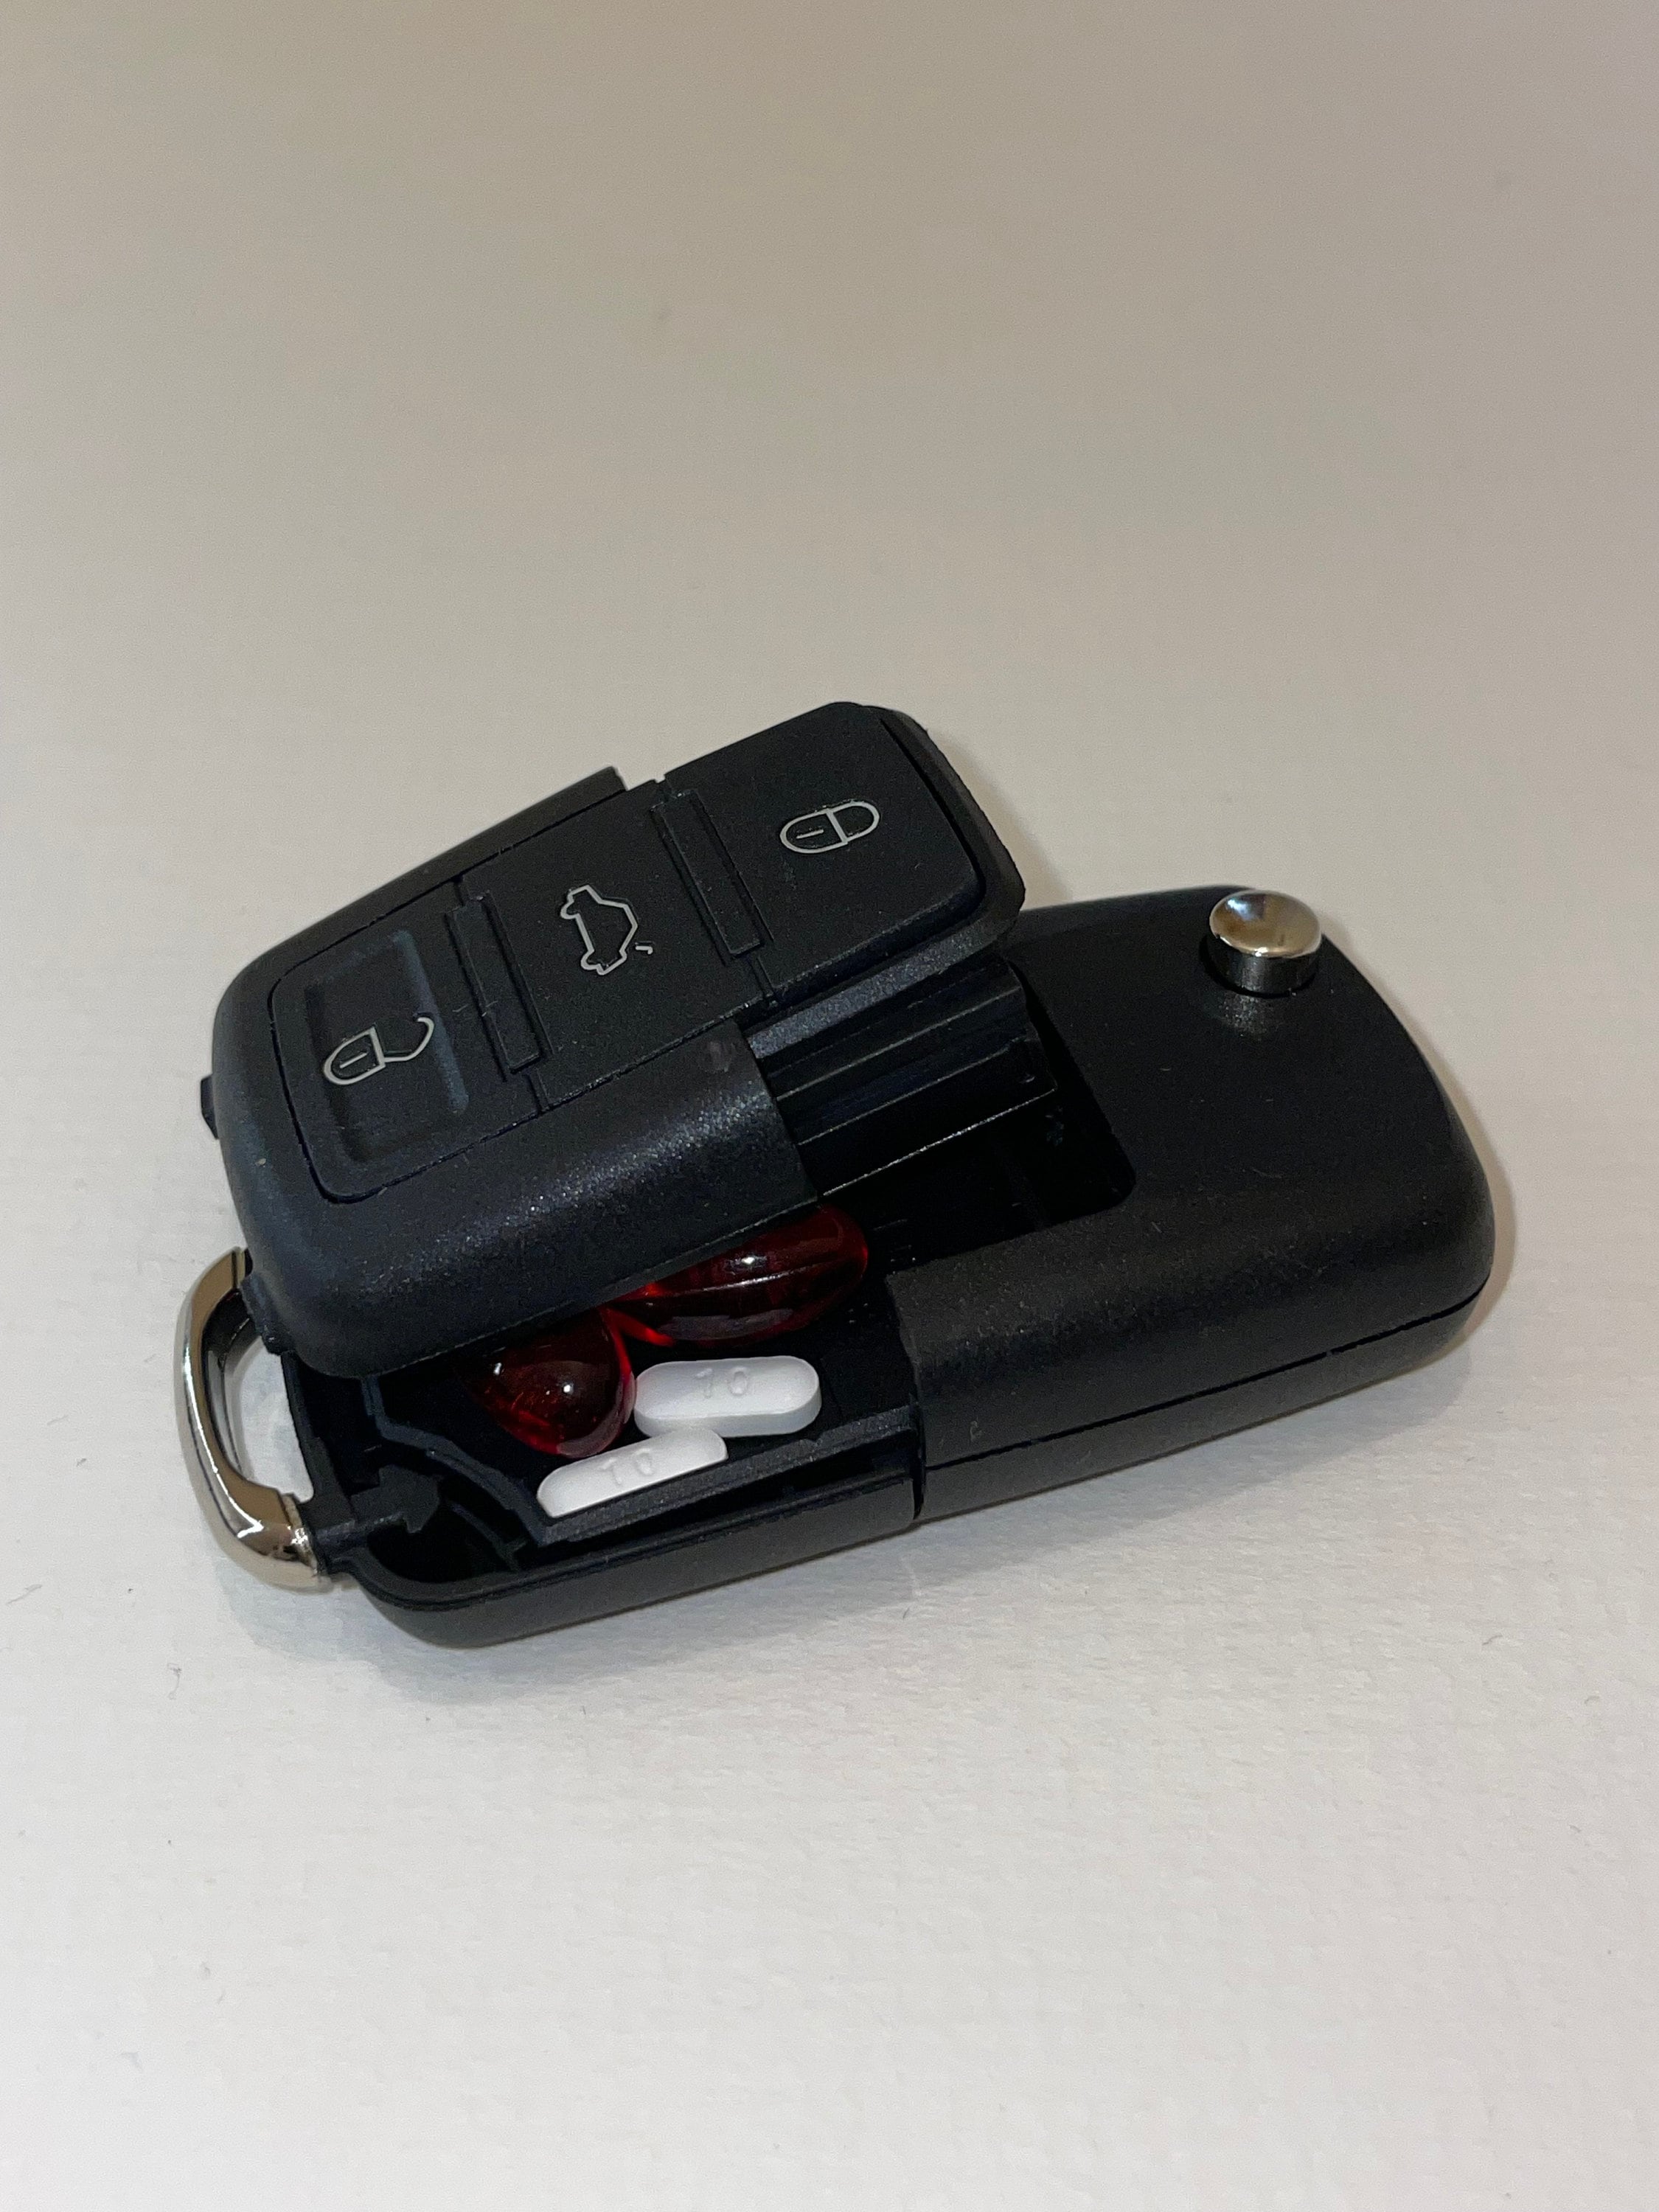 Autoschlüssel-Sperrkasten für Zuhause - .de